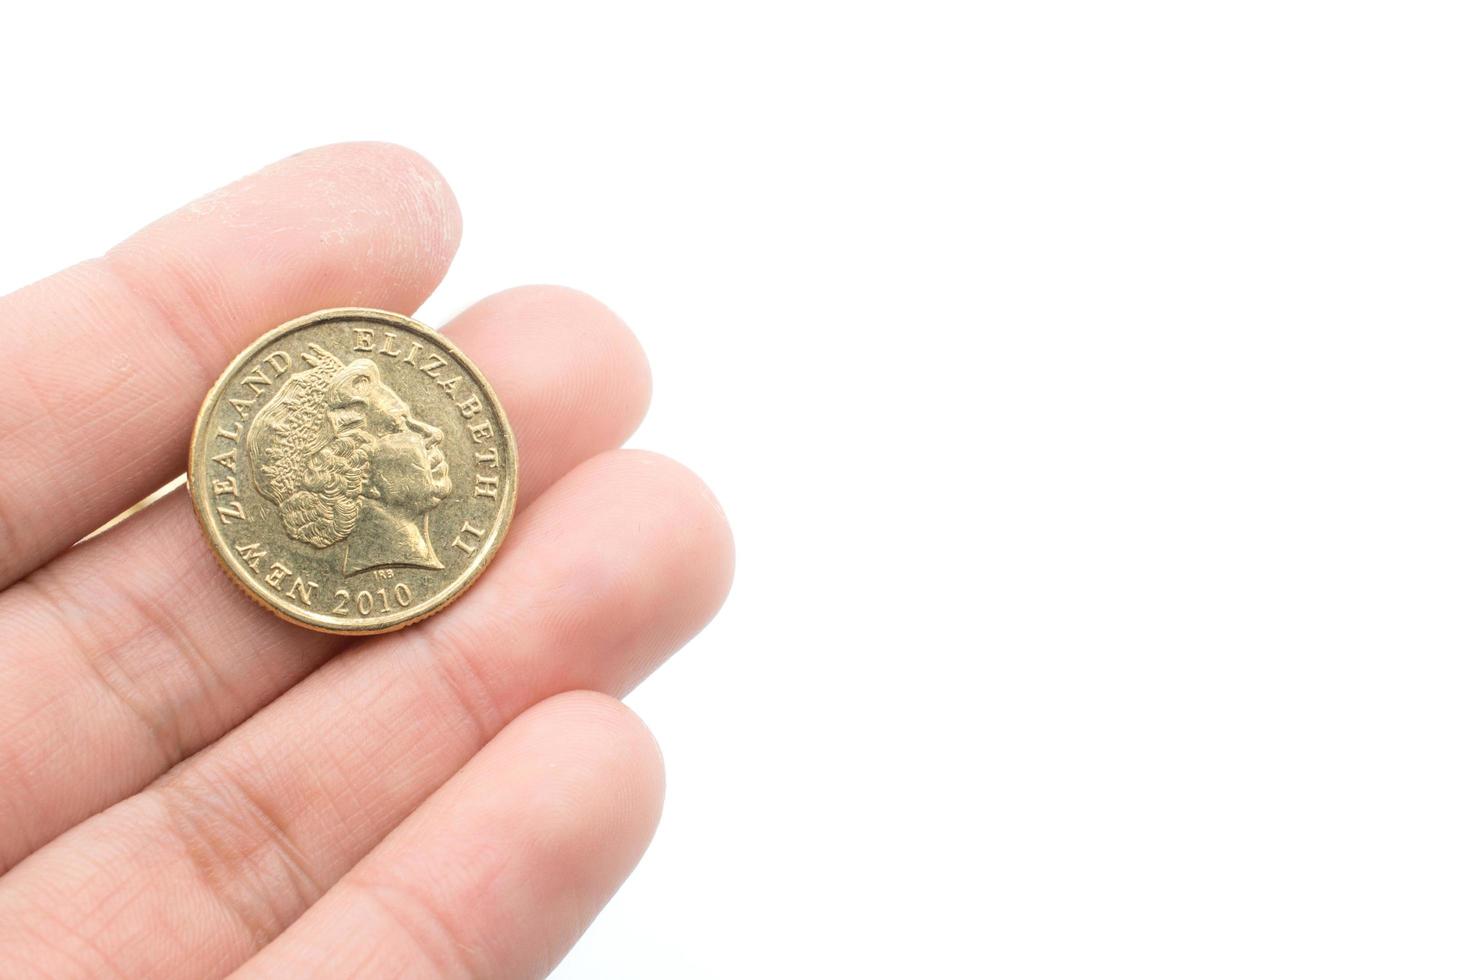 nieuw Zeeland munt 1 dollar, nieuw Zeeland munteenheid. de nieuw Zeeland dollar is de officieel valuta van nieuw Zeeland. foto